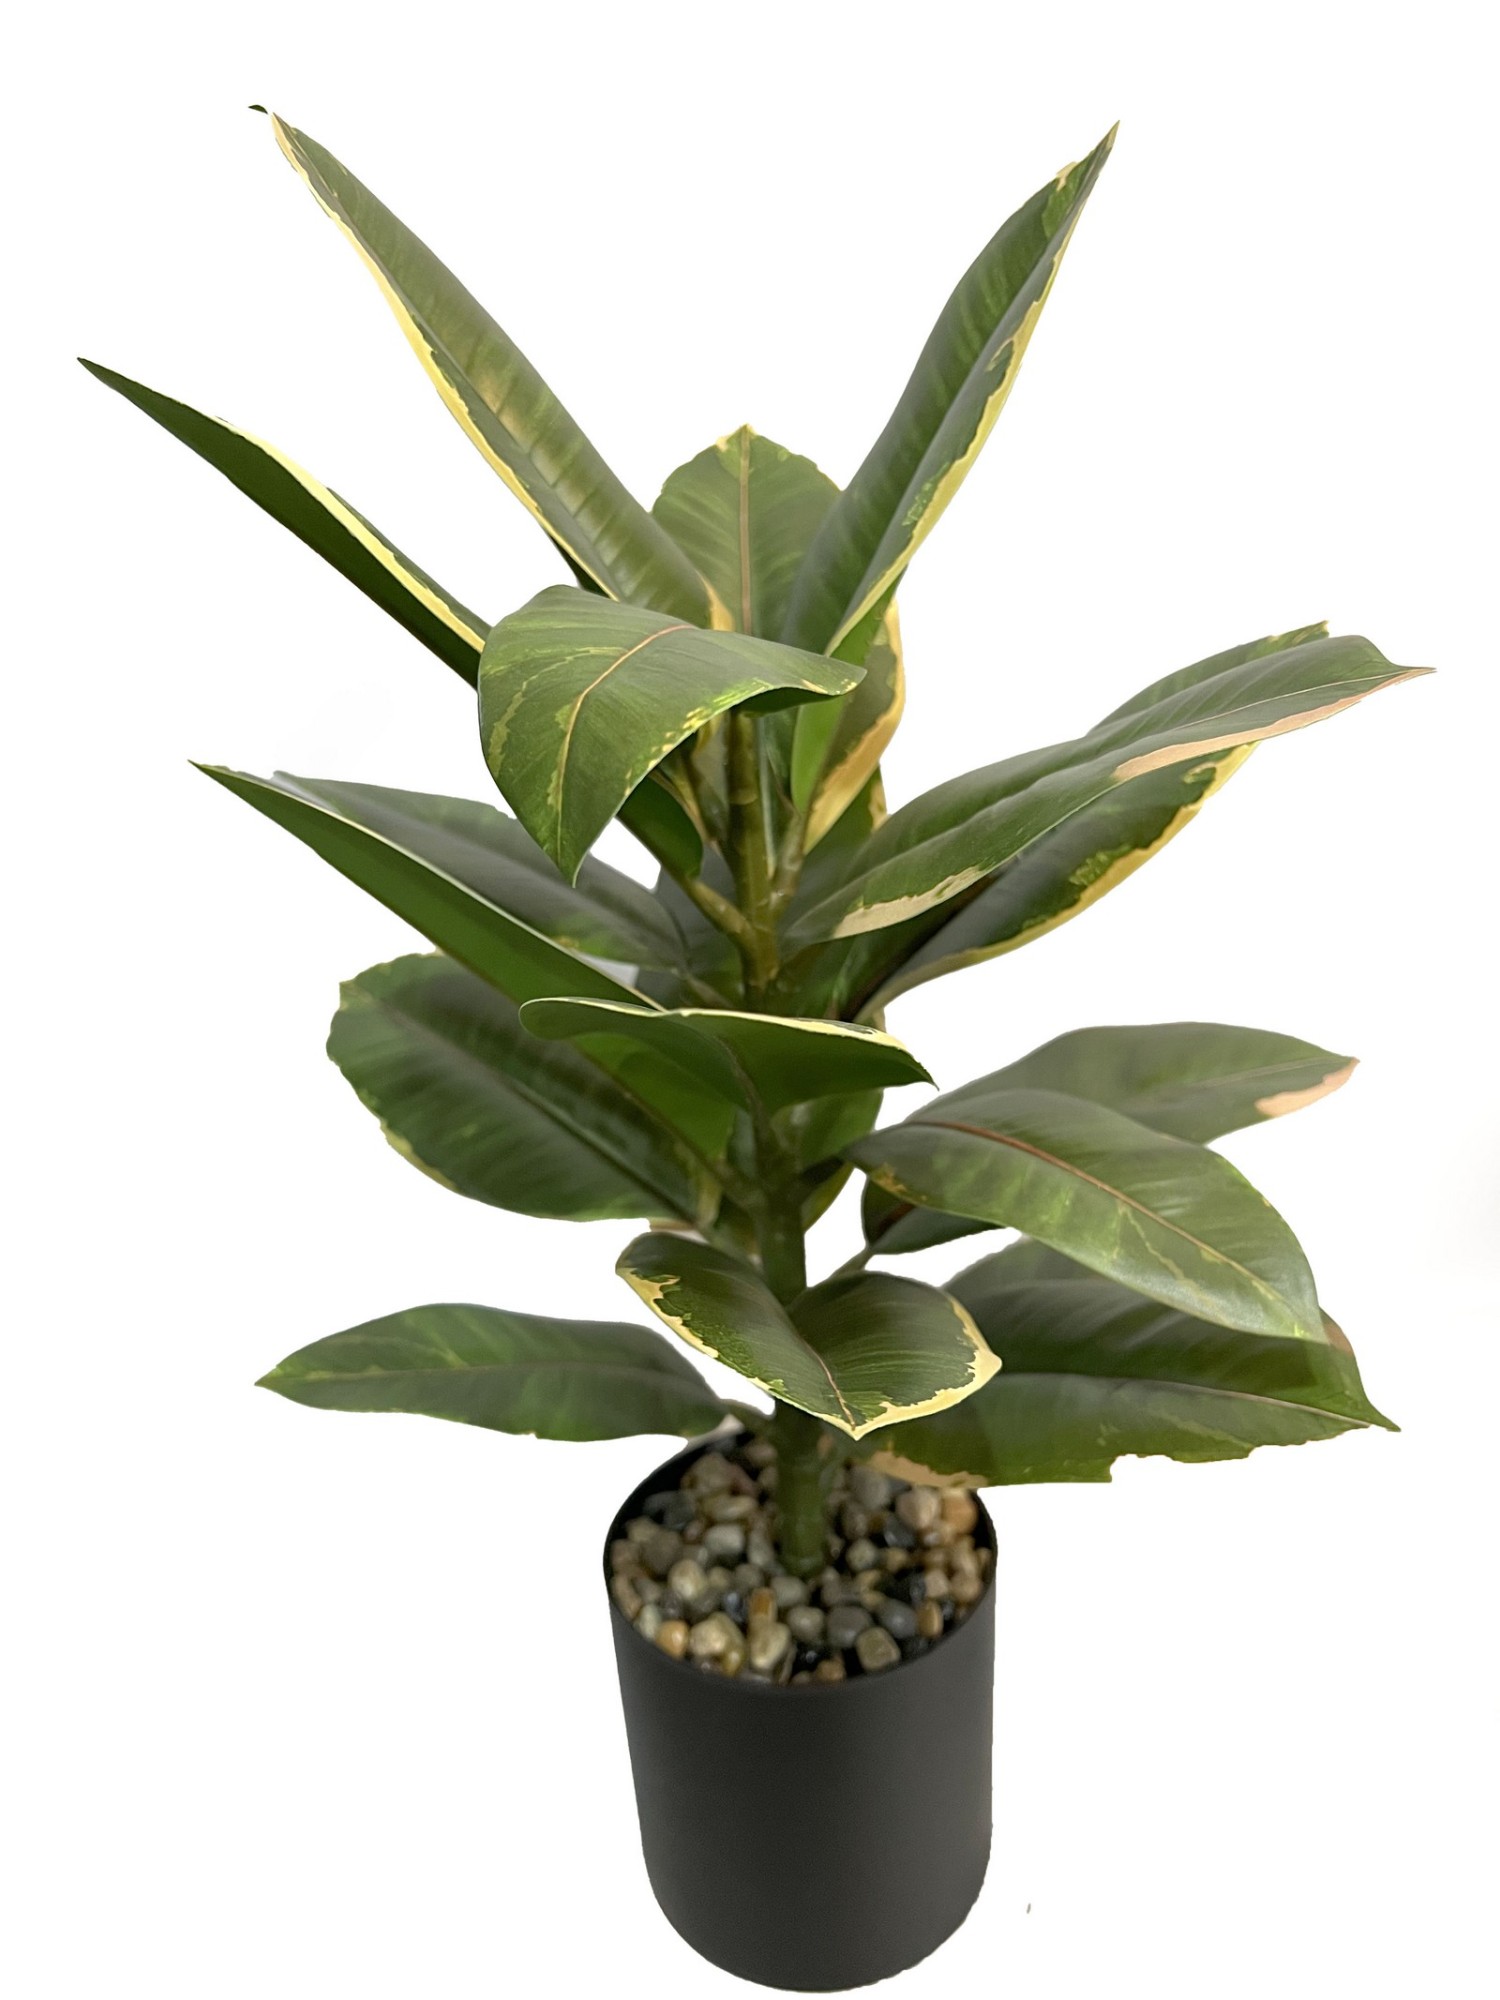 45cm Ficus elastica rubber plant in pot